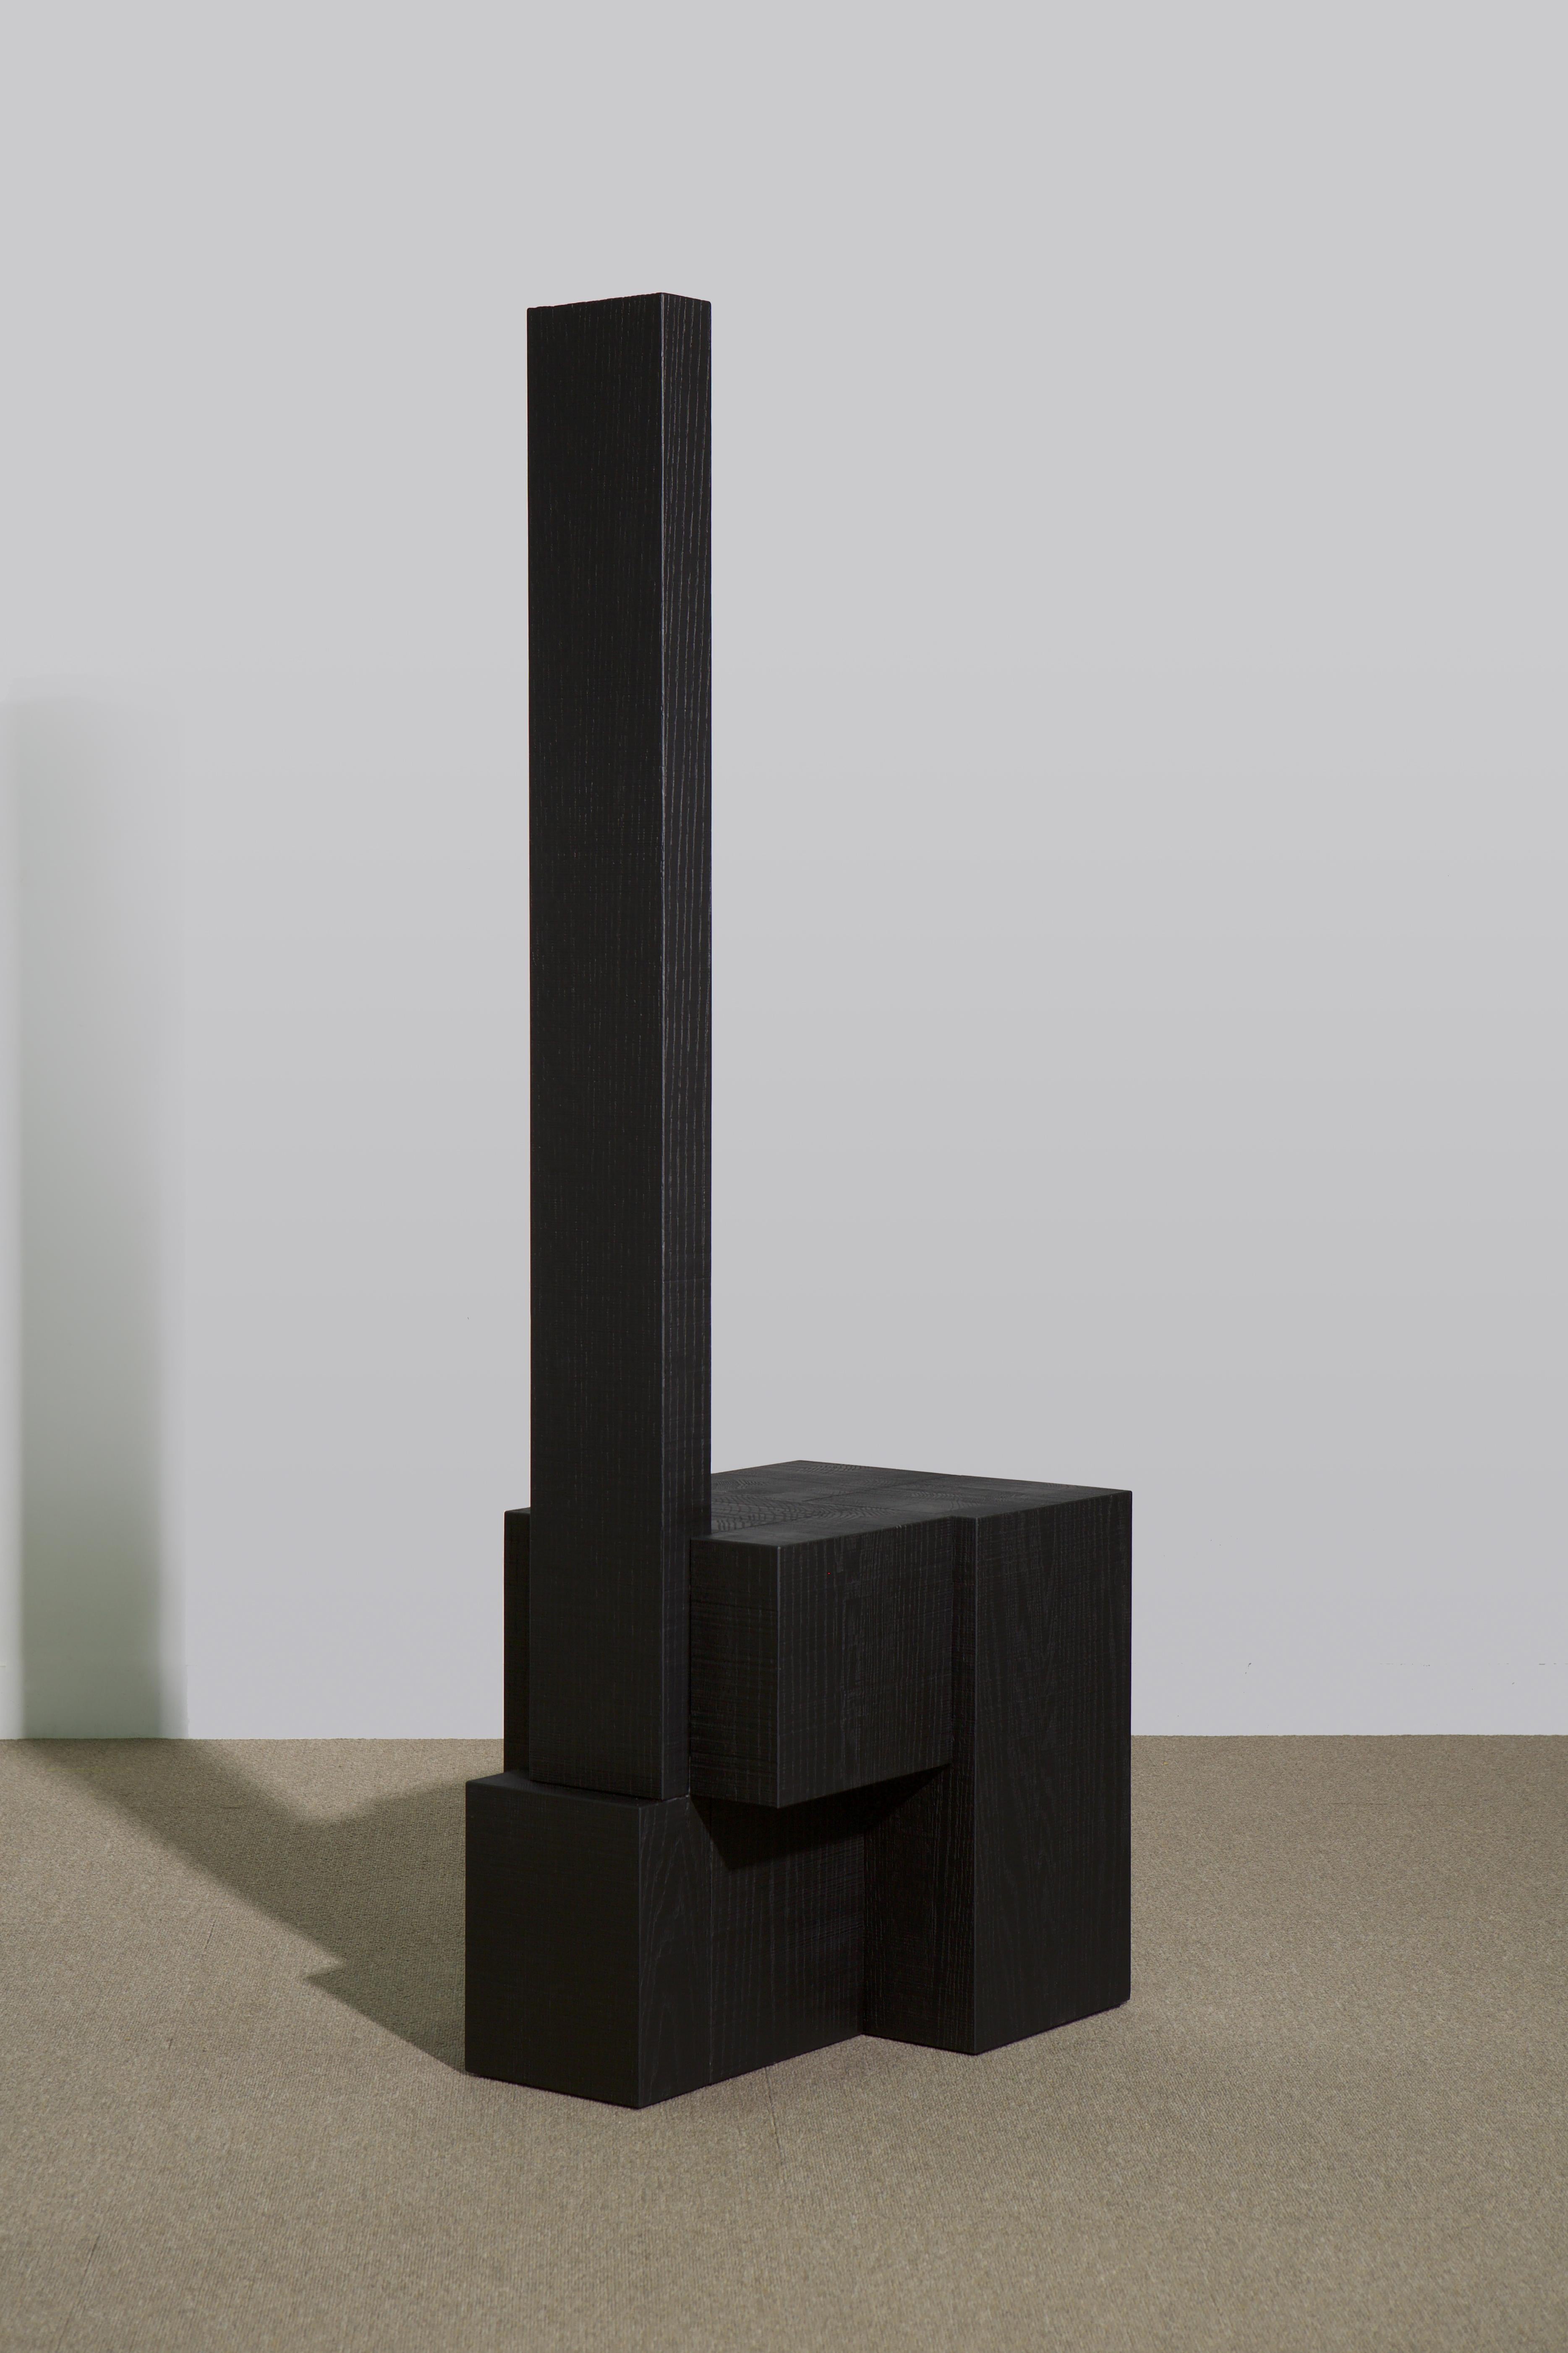 Siège en bois de chêne noir stratifié par Hyungshin Hwang
Dimensions : D 33 x L 54 x H 120 cm
MATERIAL : chêne rouge ébonisé

Layered Series est le thème principal et le concept de l'œuvre de Can, qui poursuit son expérience basée sur la composition